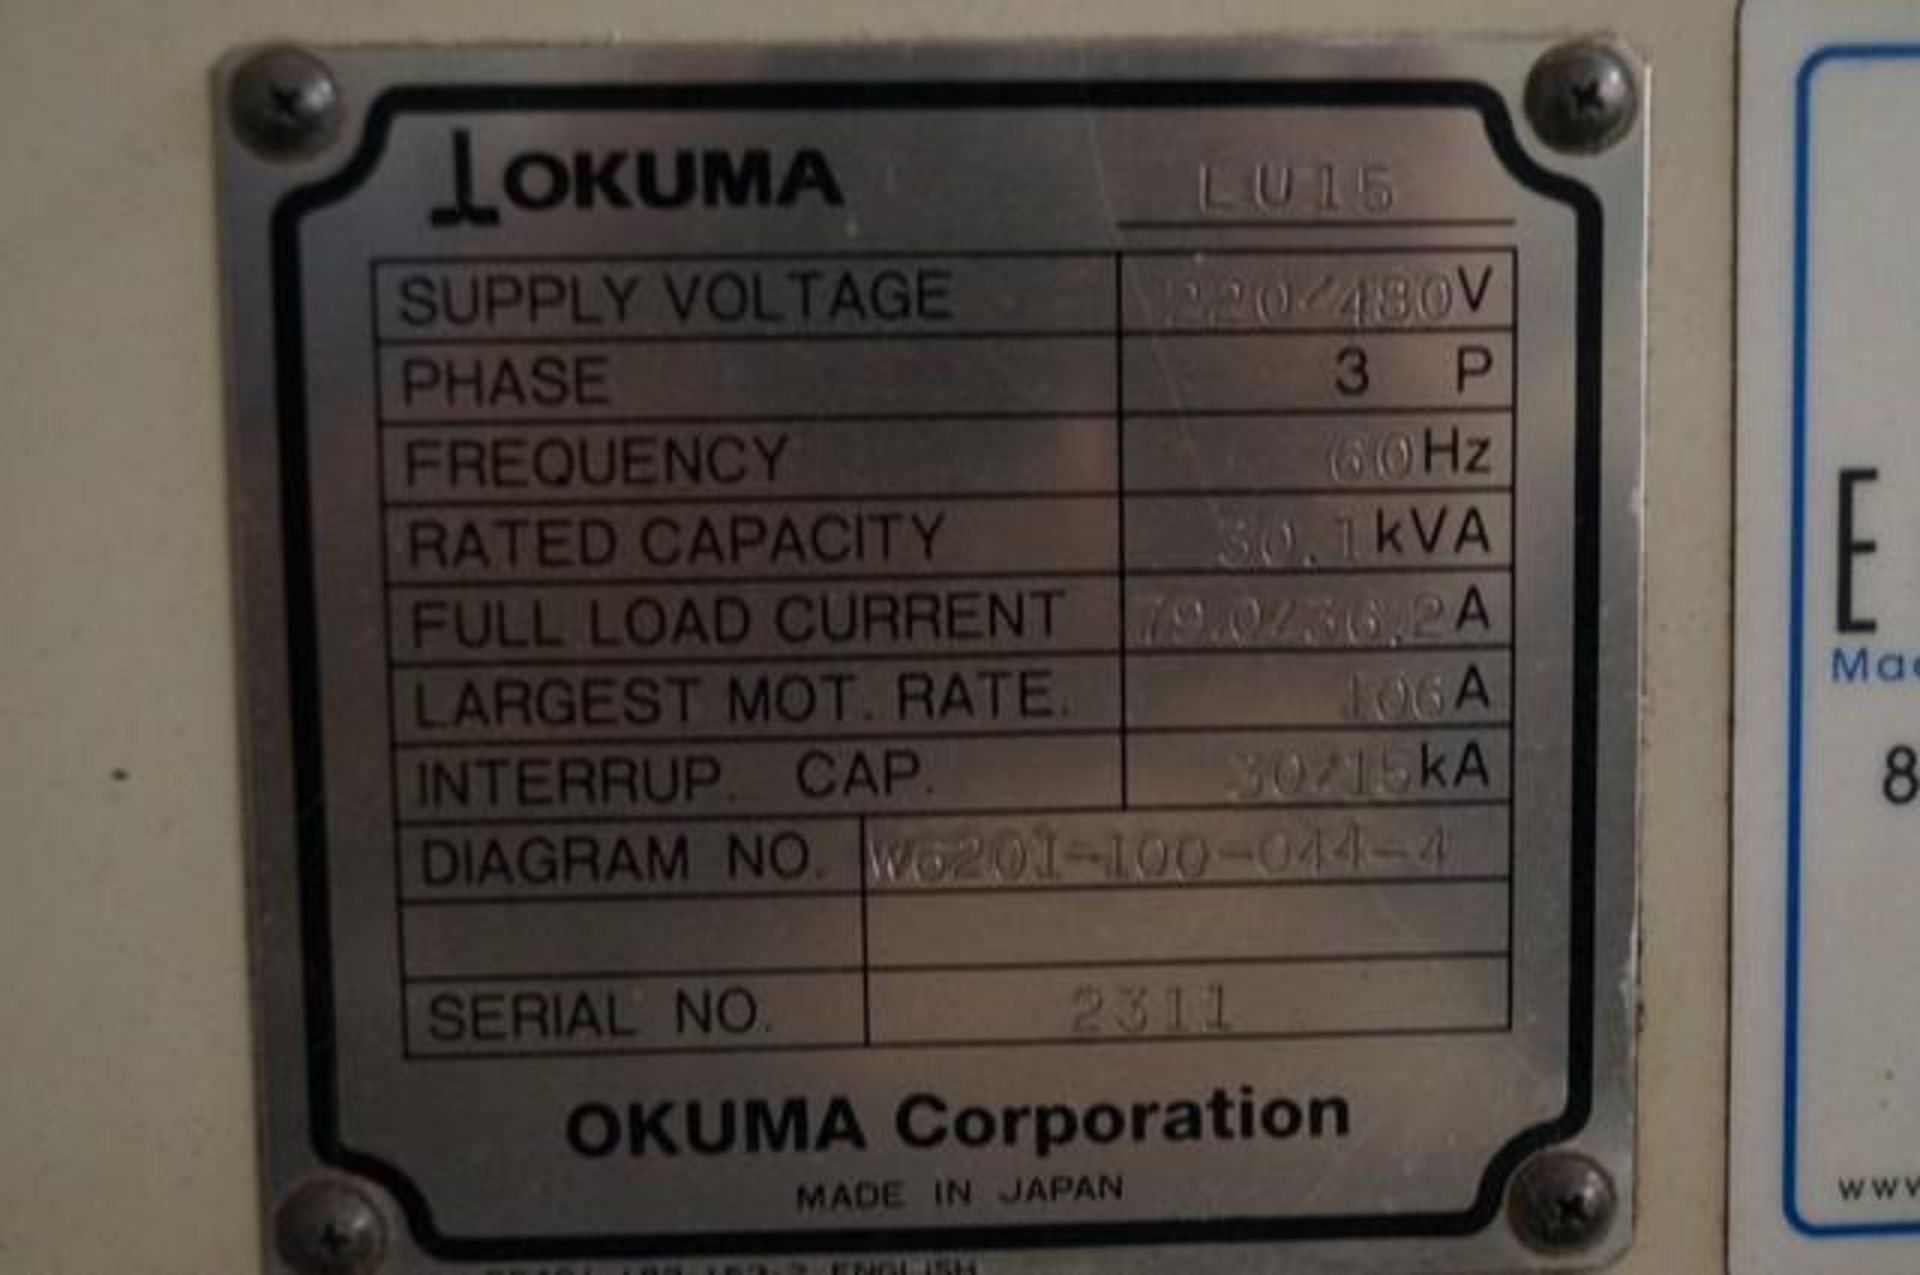 2001 OKUMA LU15 Twin Turret CNC Horizontal Turning Center - Image 10 of 13